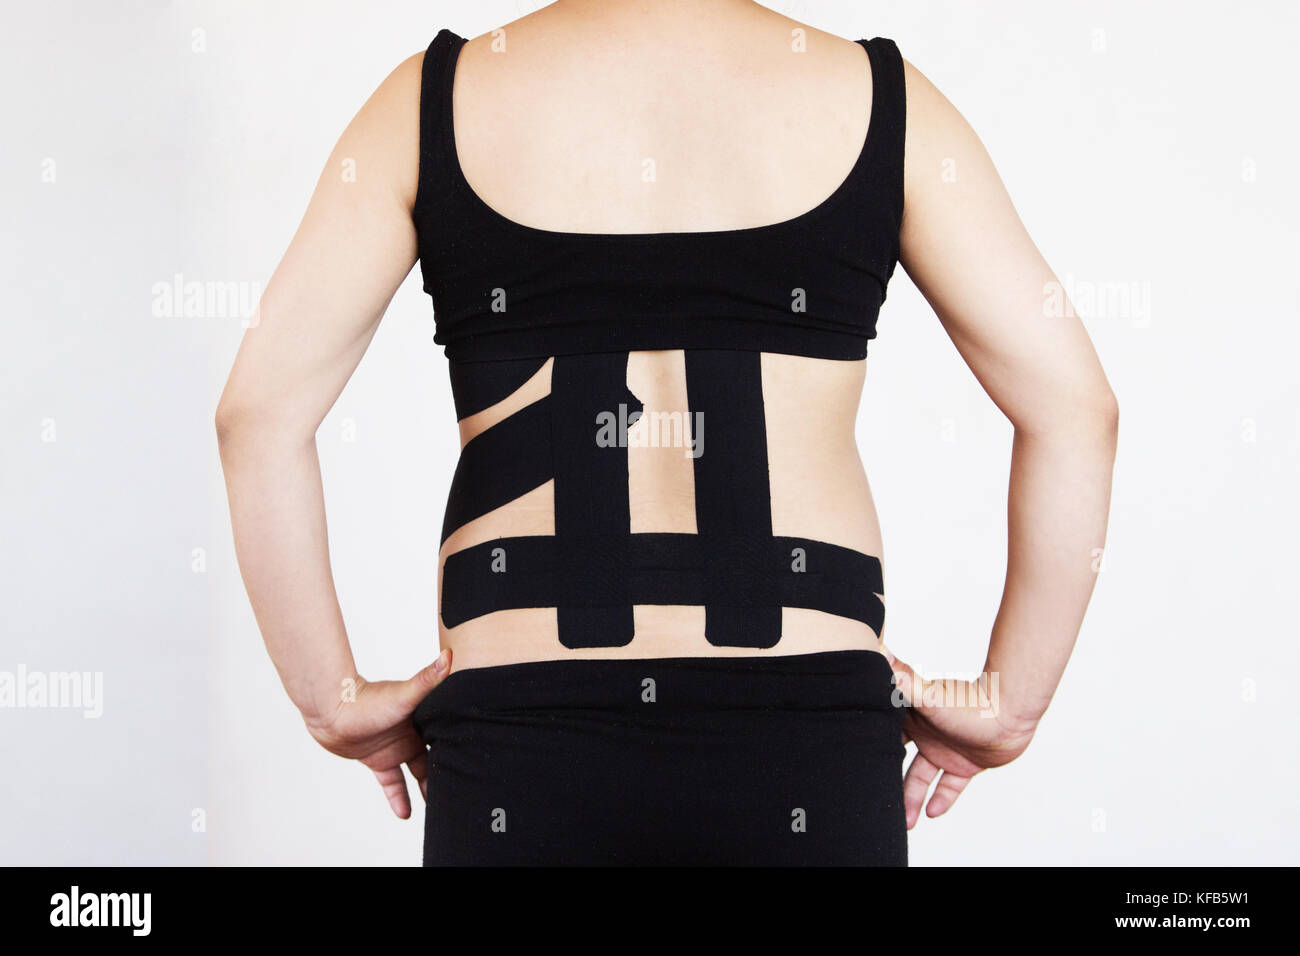 Kinesio taping sur le dos d'une femme enceinte à réduire les maux de dos Banque D'Images